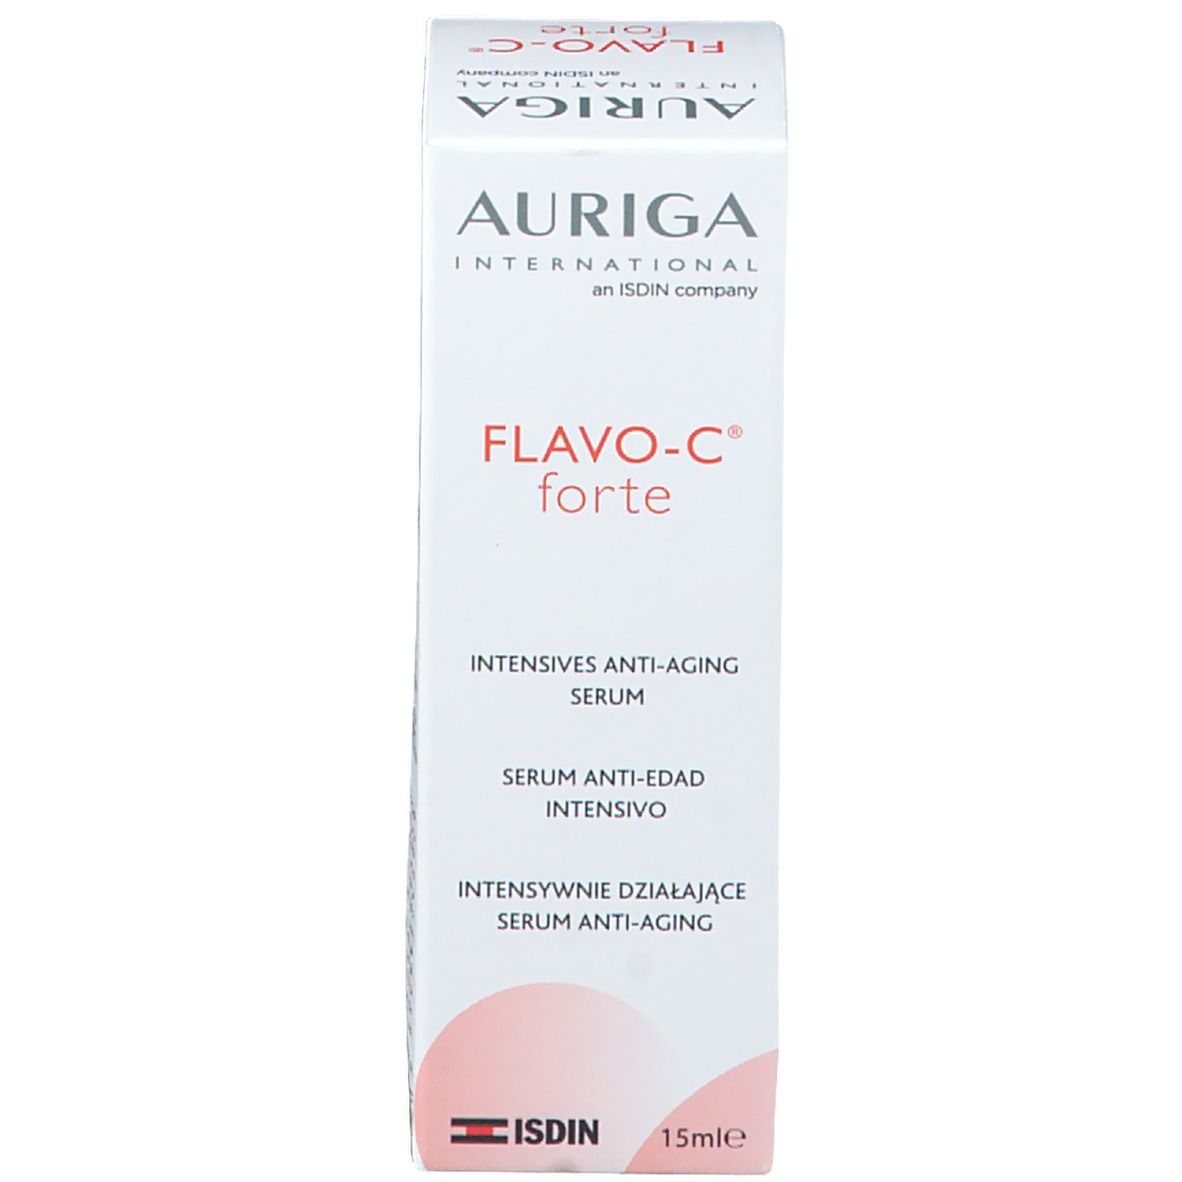 Auriga FLAVO-C® Forte